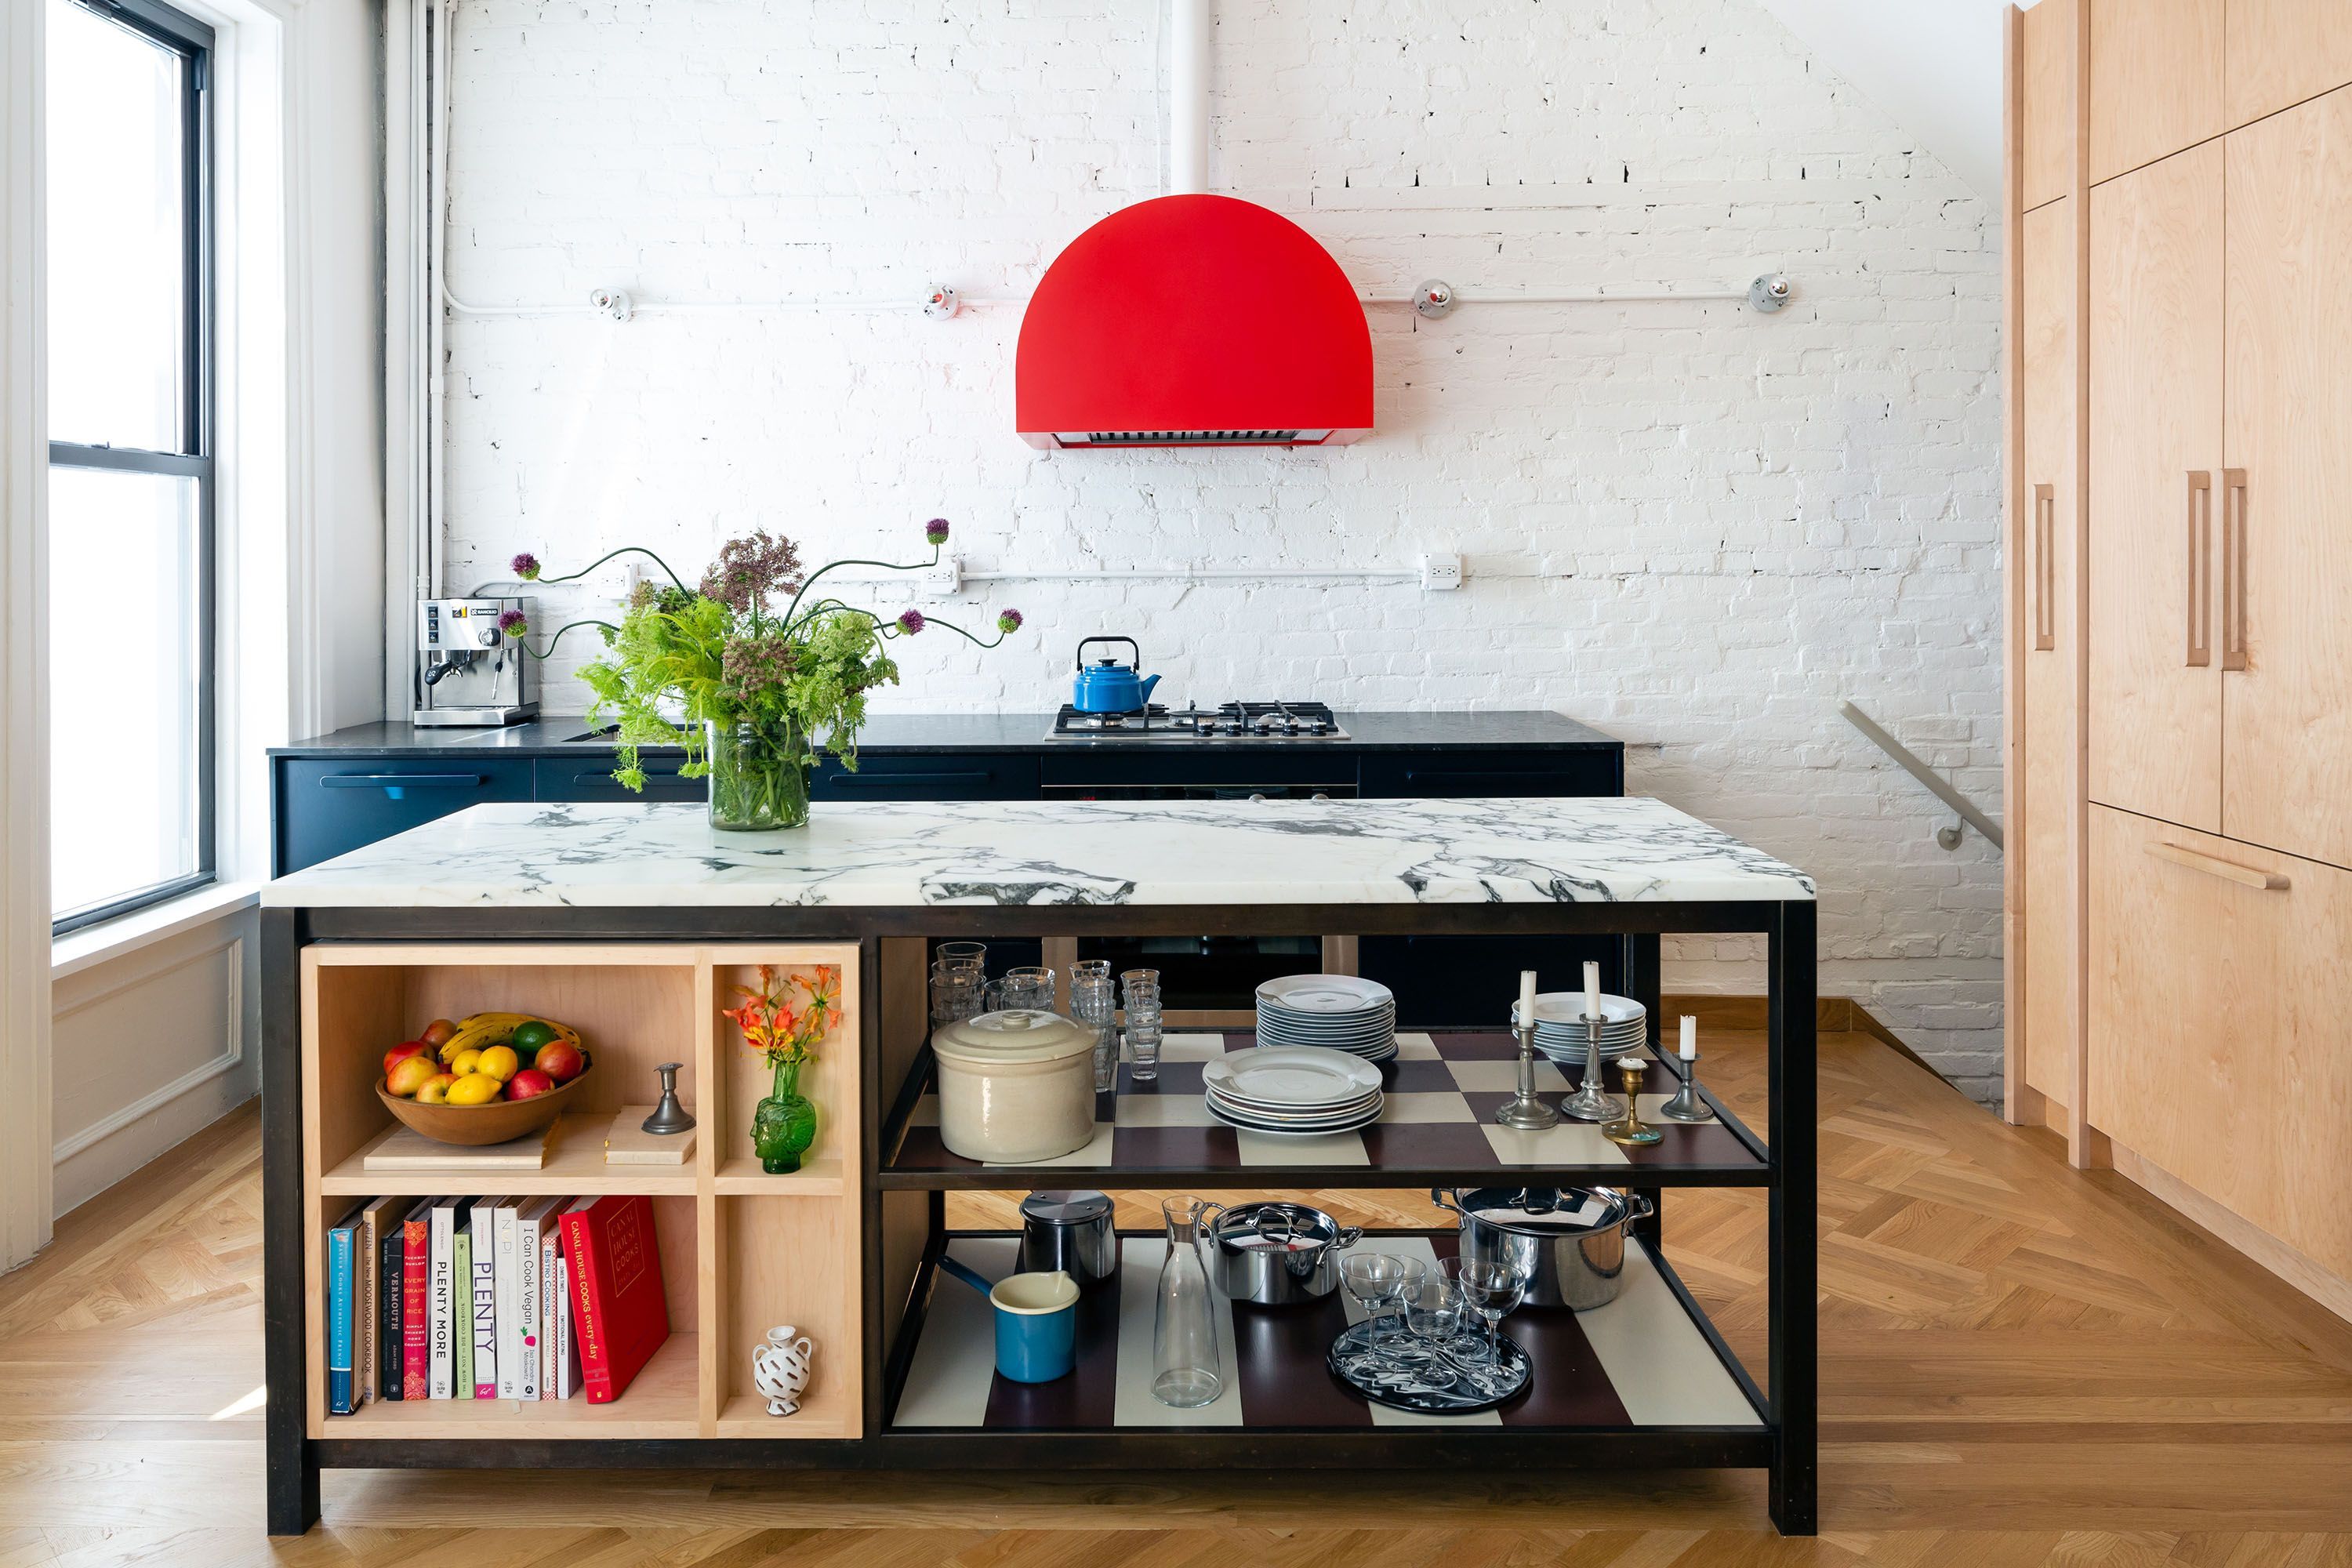 15 DIY Kitchen Decorating Ideas - Ellementry